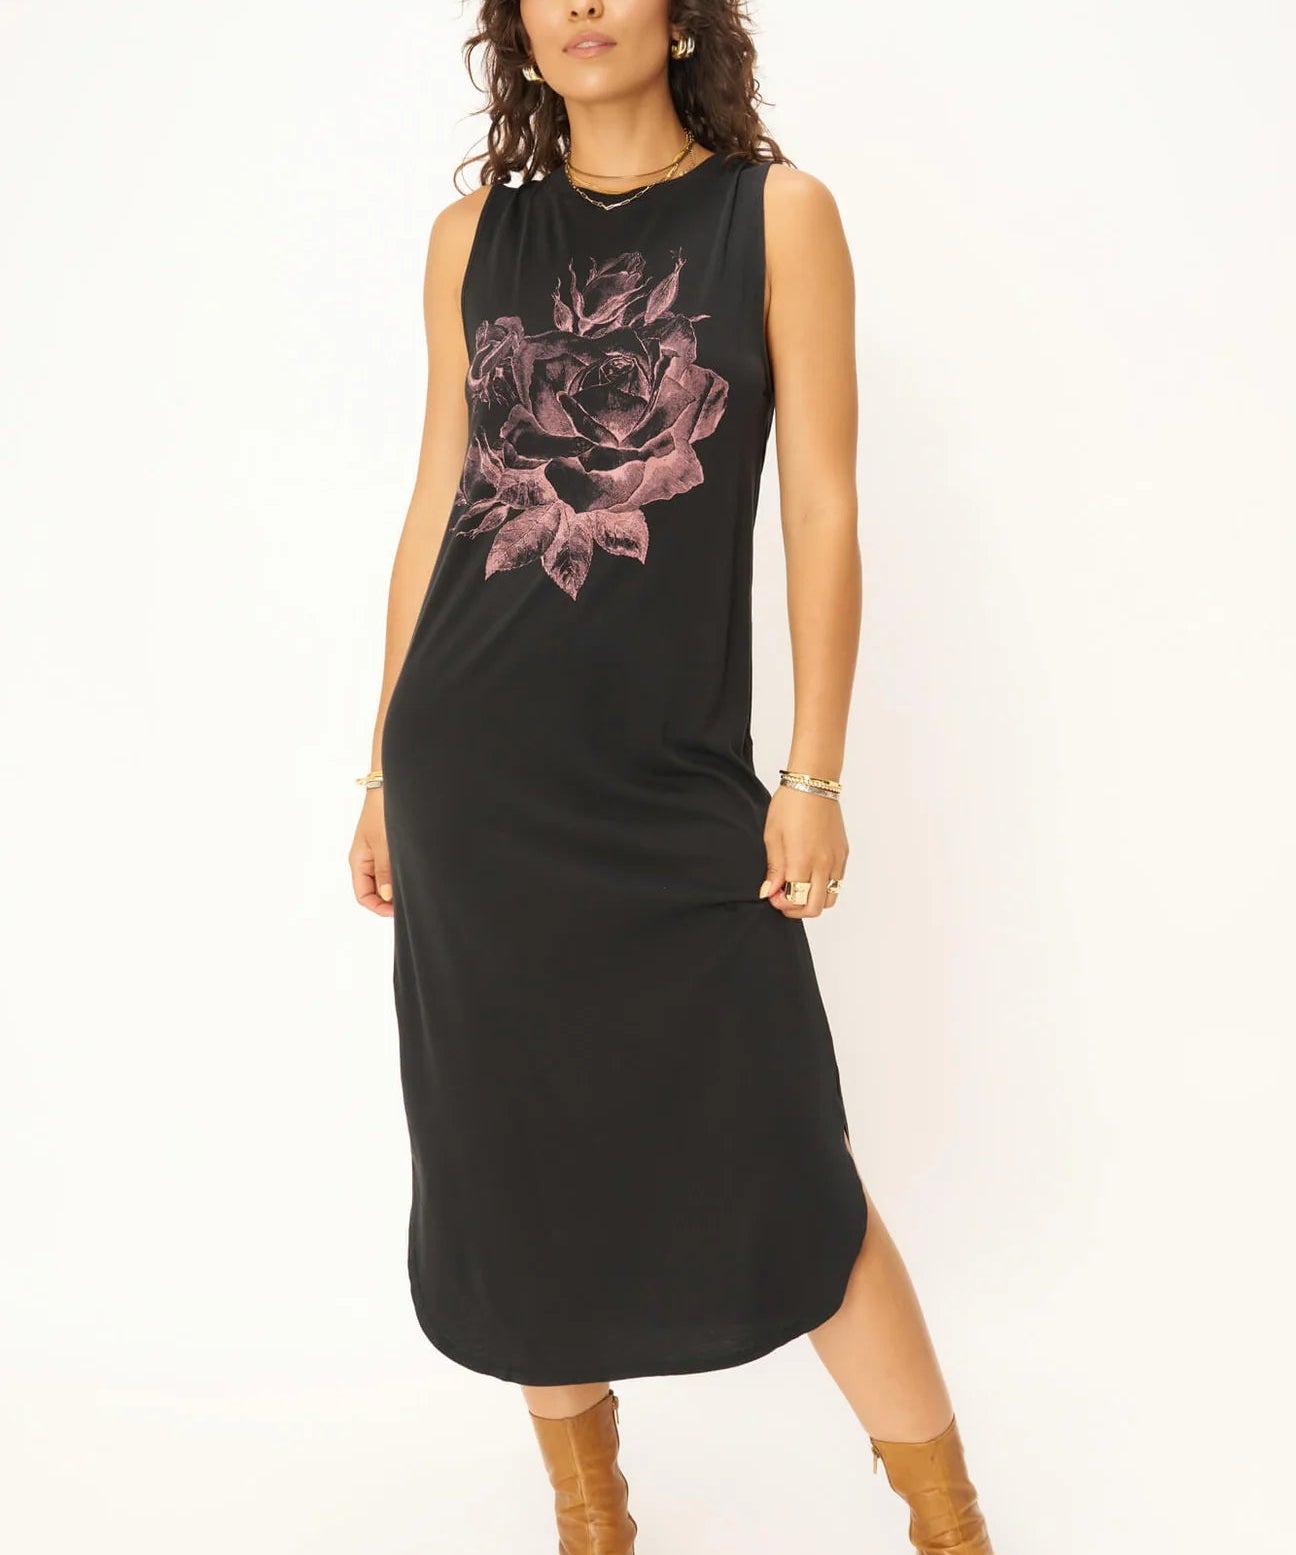 ROSES TANK DRESS - DW BLACK - Blue Sky Fashions & Lingerie